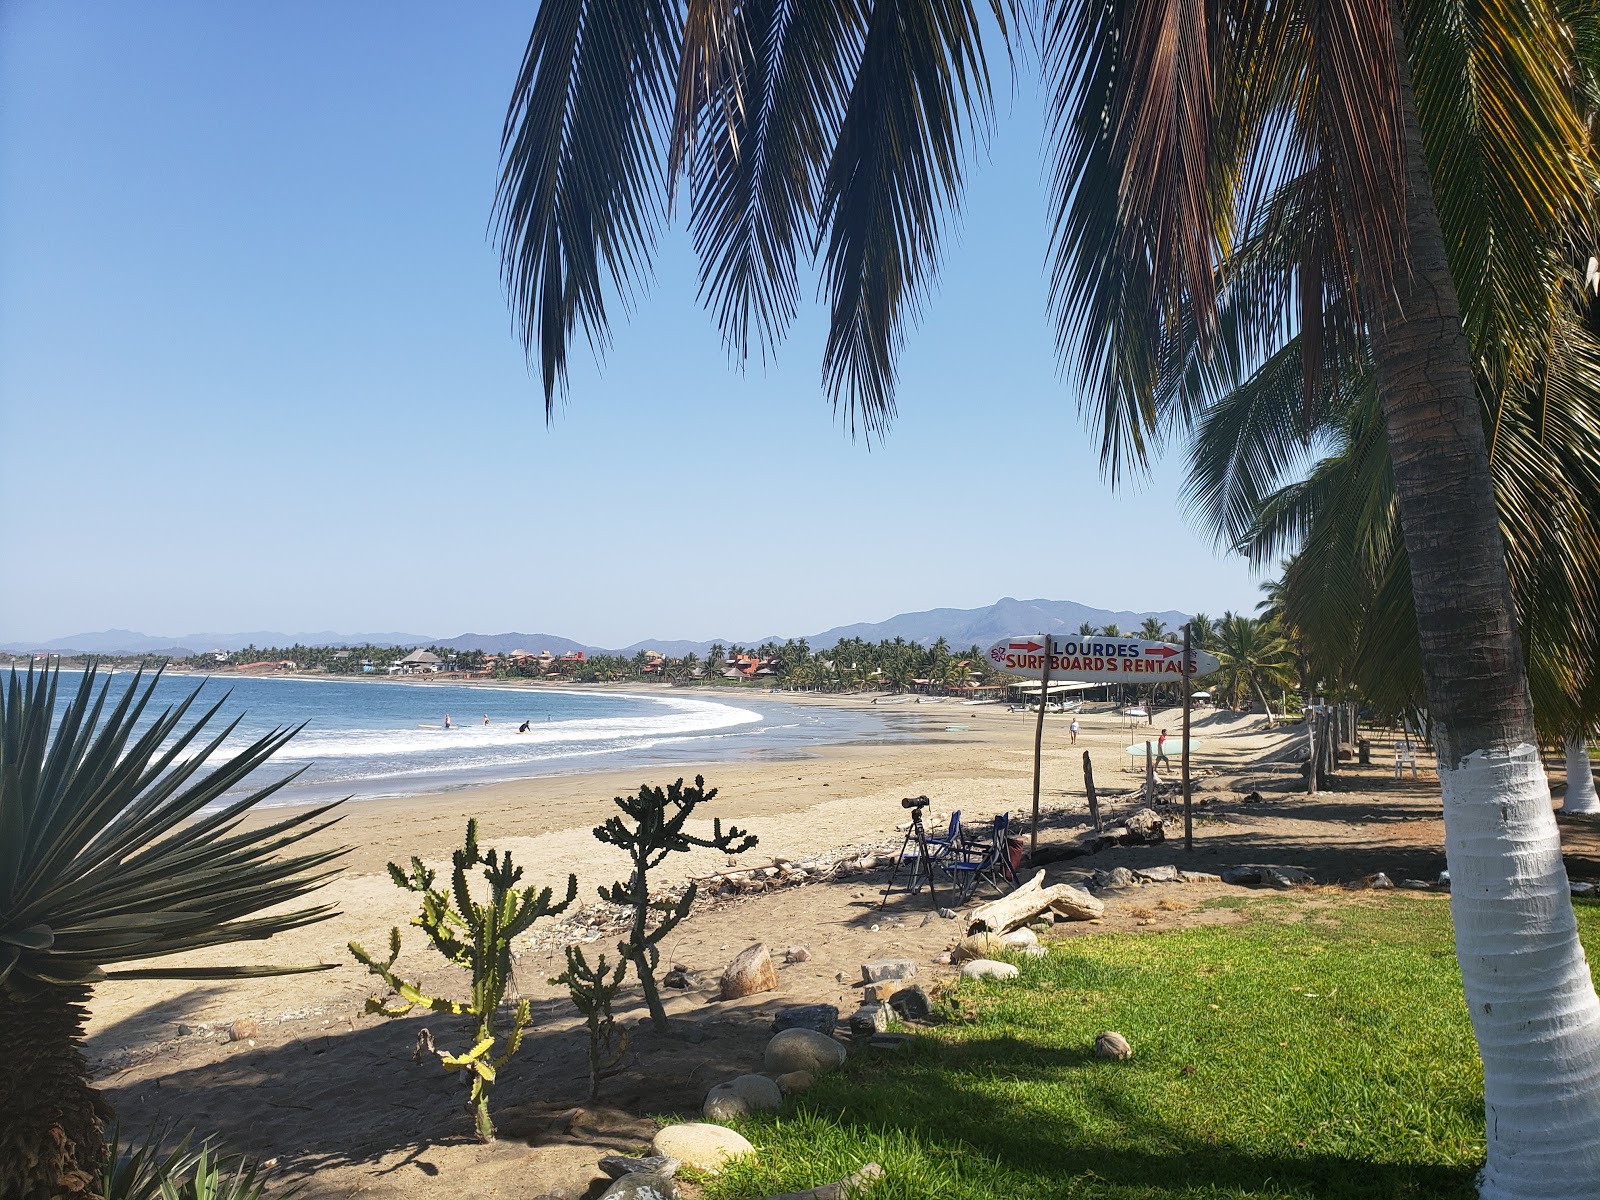 Playa La Saladita'in fotoğrafı geniş plaj ile birlikte